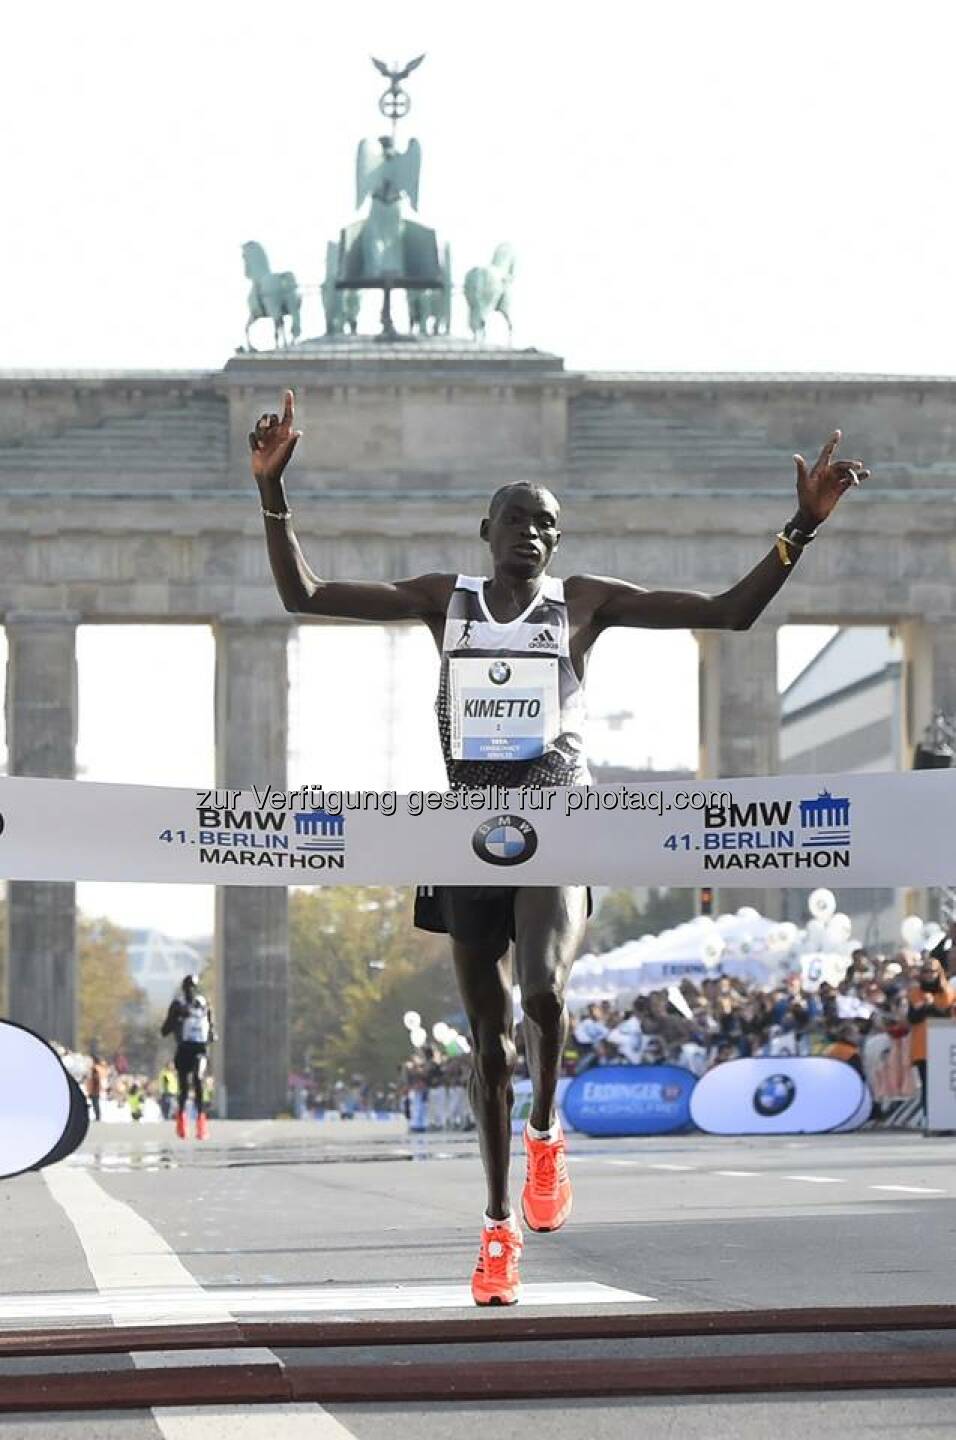 Auf Continental Sohlen zum #Weltrekord: Gestern verbesserte der Kenianer Dennis Kimetto beim BERLIN-MARATHON den Weltrekord auf 2:02:57 Stunden.
http://bit.ly/1ry7KrR  Source: http://facebook.com/Continental.Reifen